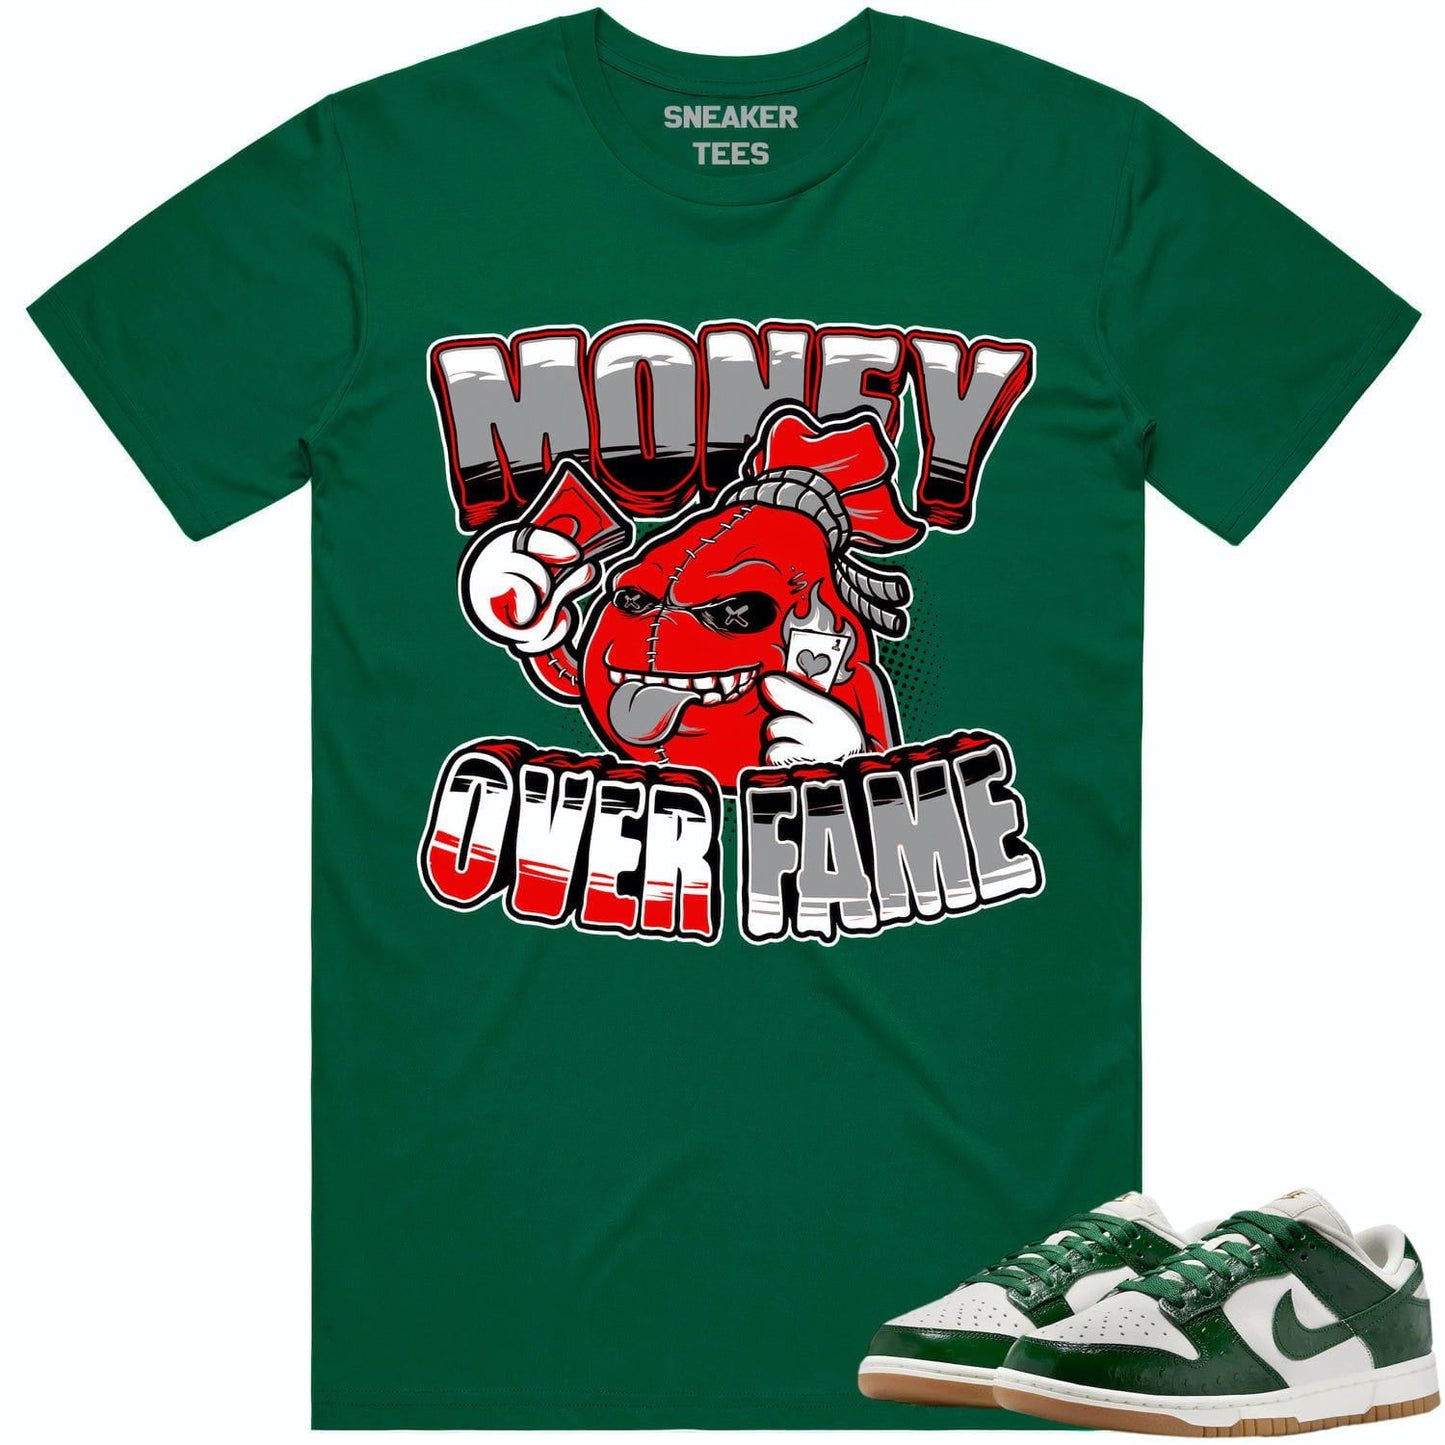 Green Ostrich Dunks Shirt - Dunks Sneaker Tees - Red Money Fame